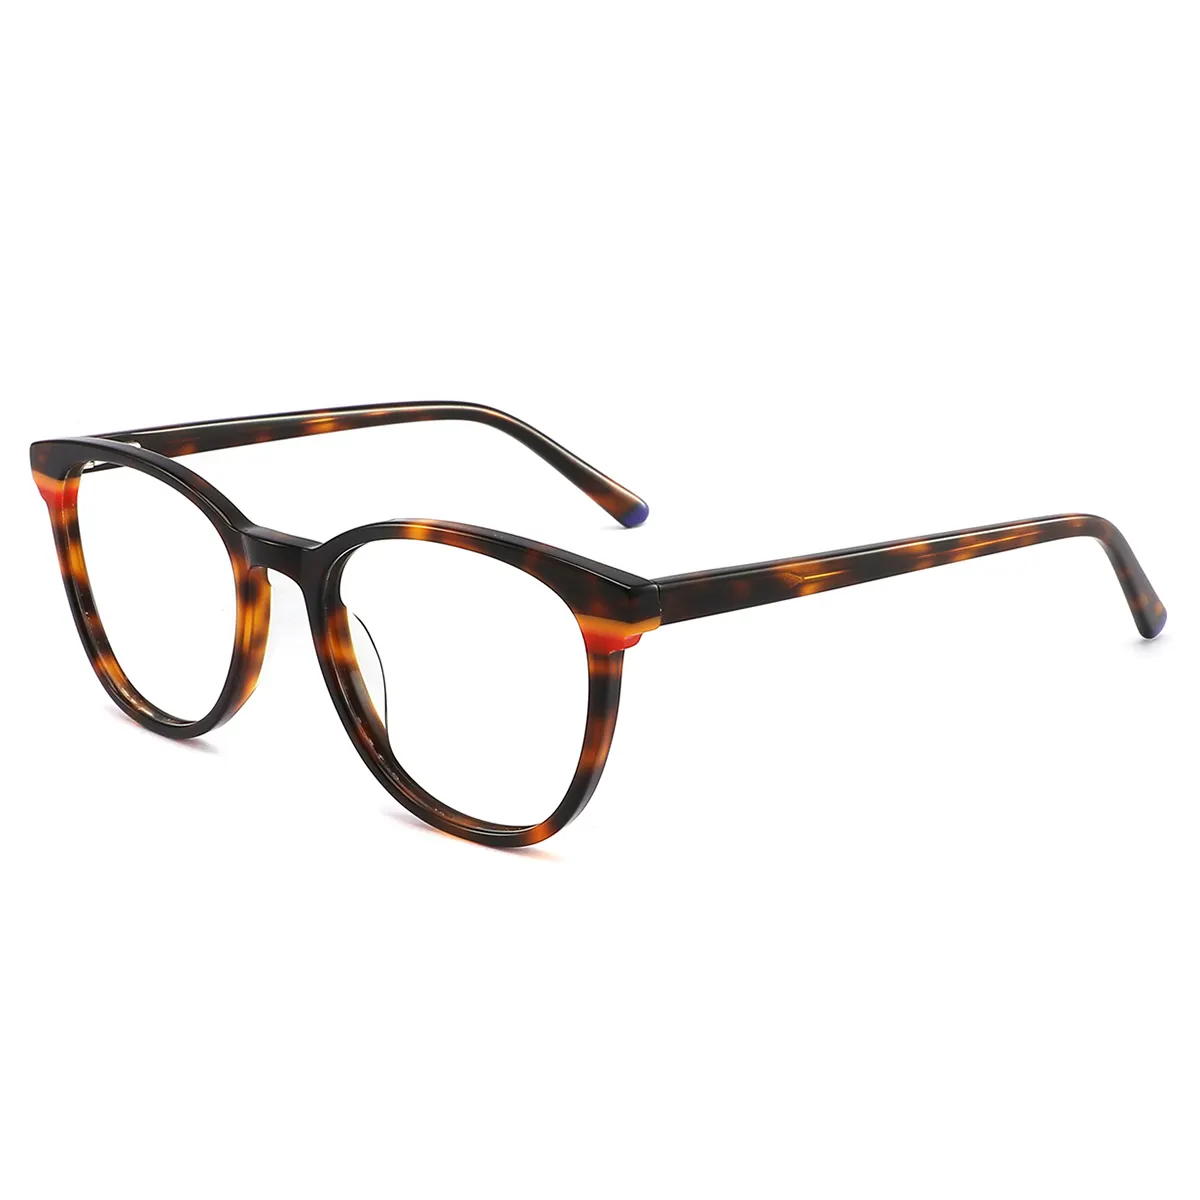 Full rim 21.5g black red tortoiseshell round acetate thick frame glasses,frame eyeglasses optical,hot sale eyeglasses frames